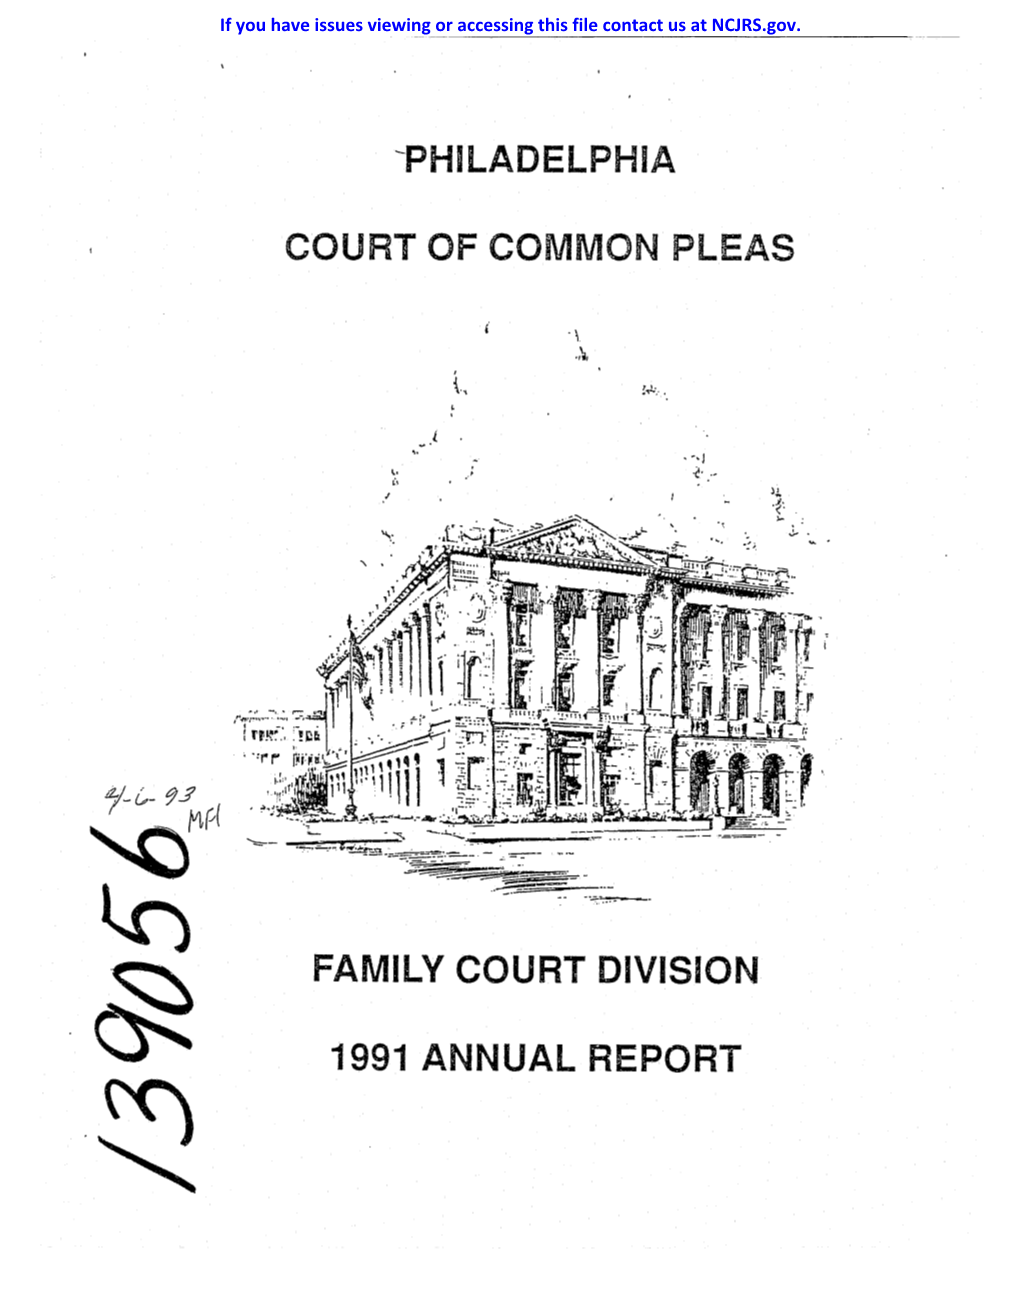 Philadelphia Court of Common Pleas